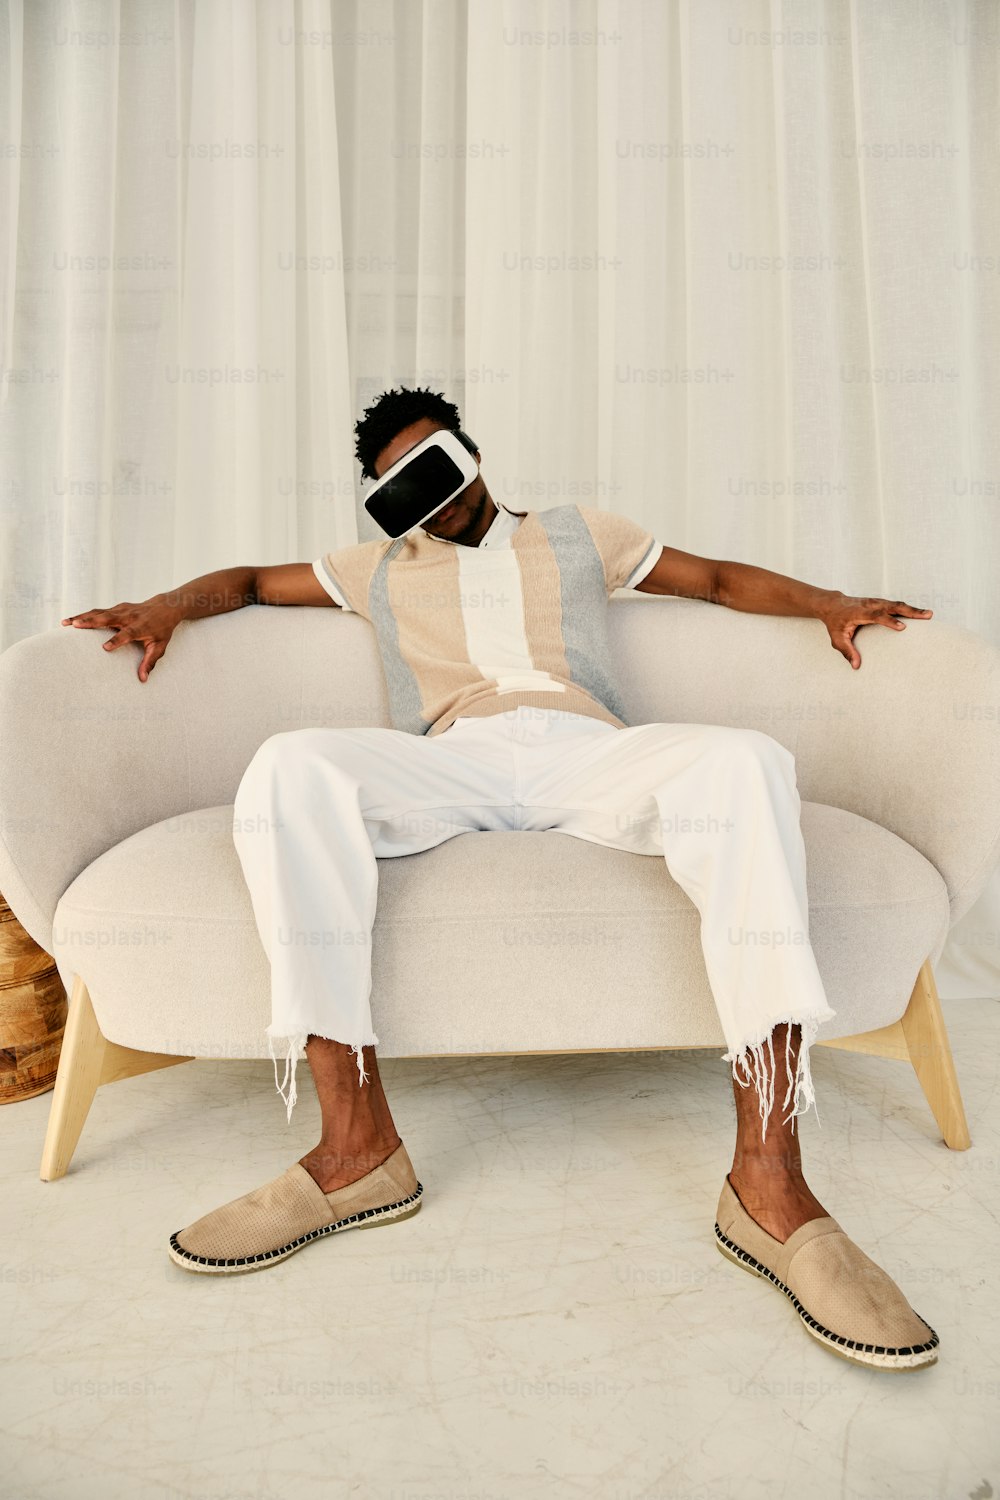 Un hombre sentado en un sofá con los ojos vendados